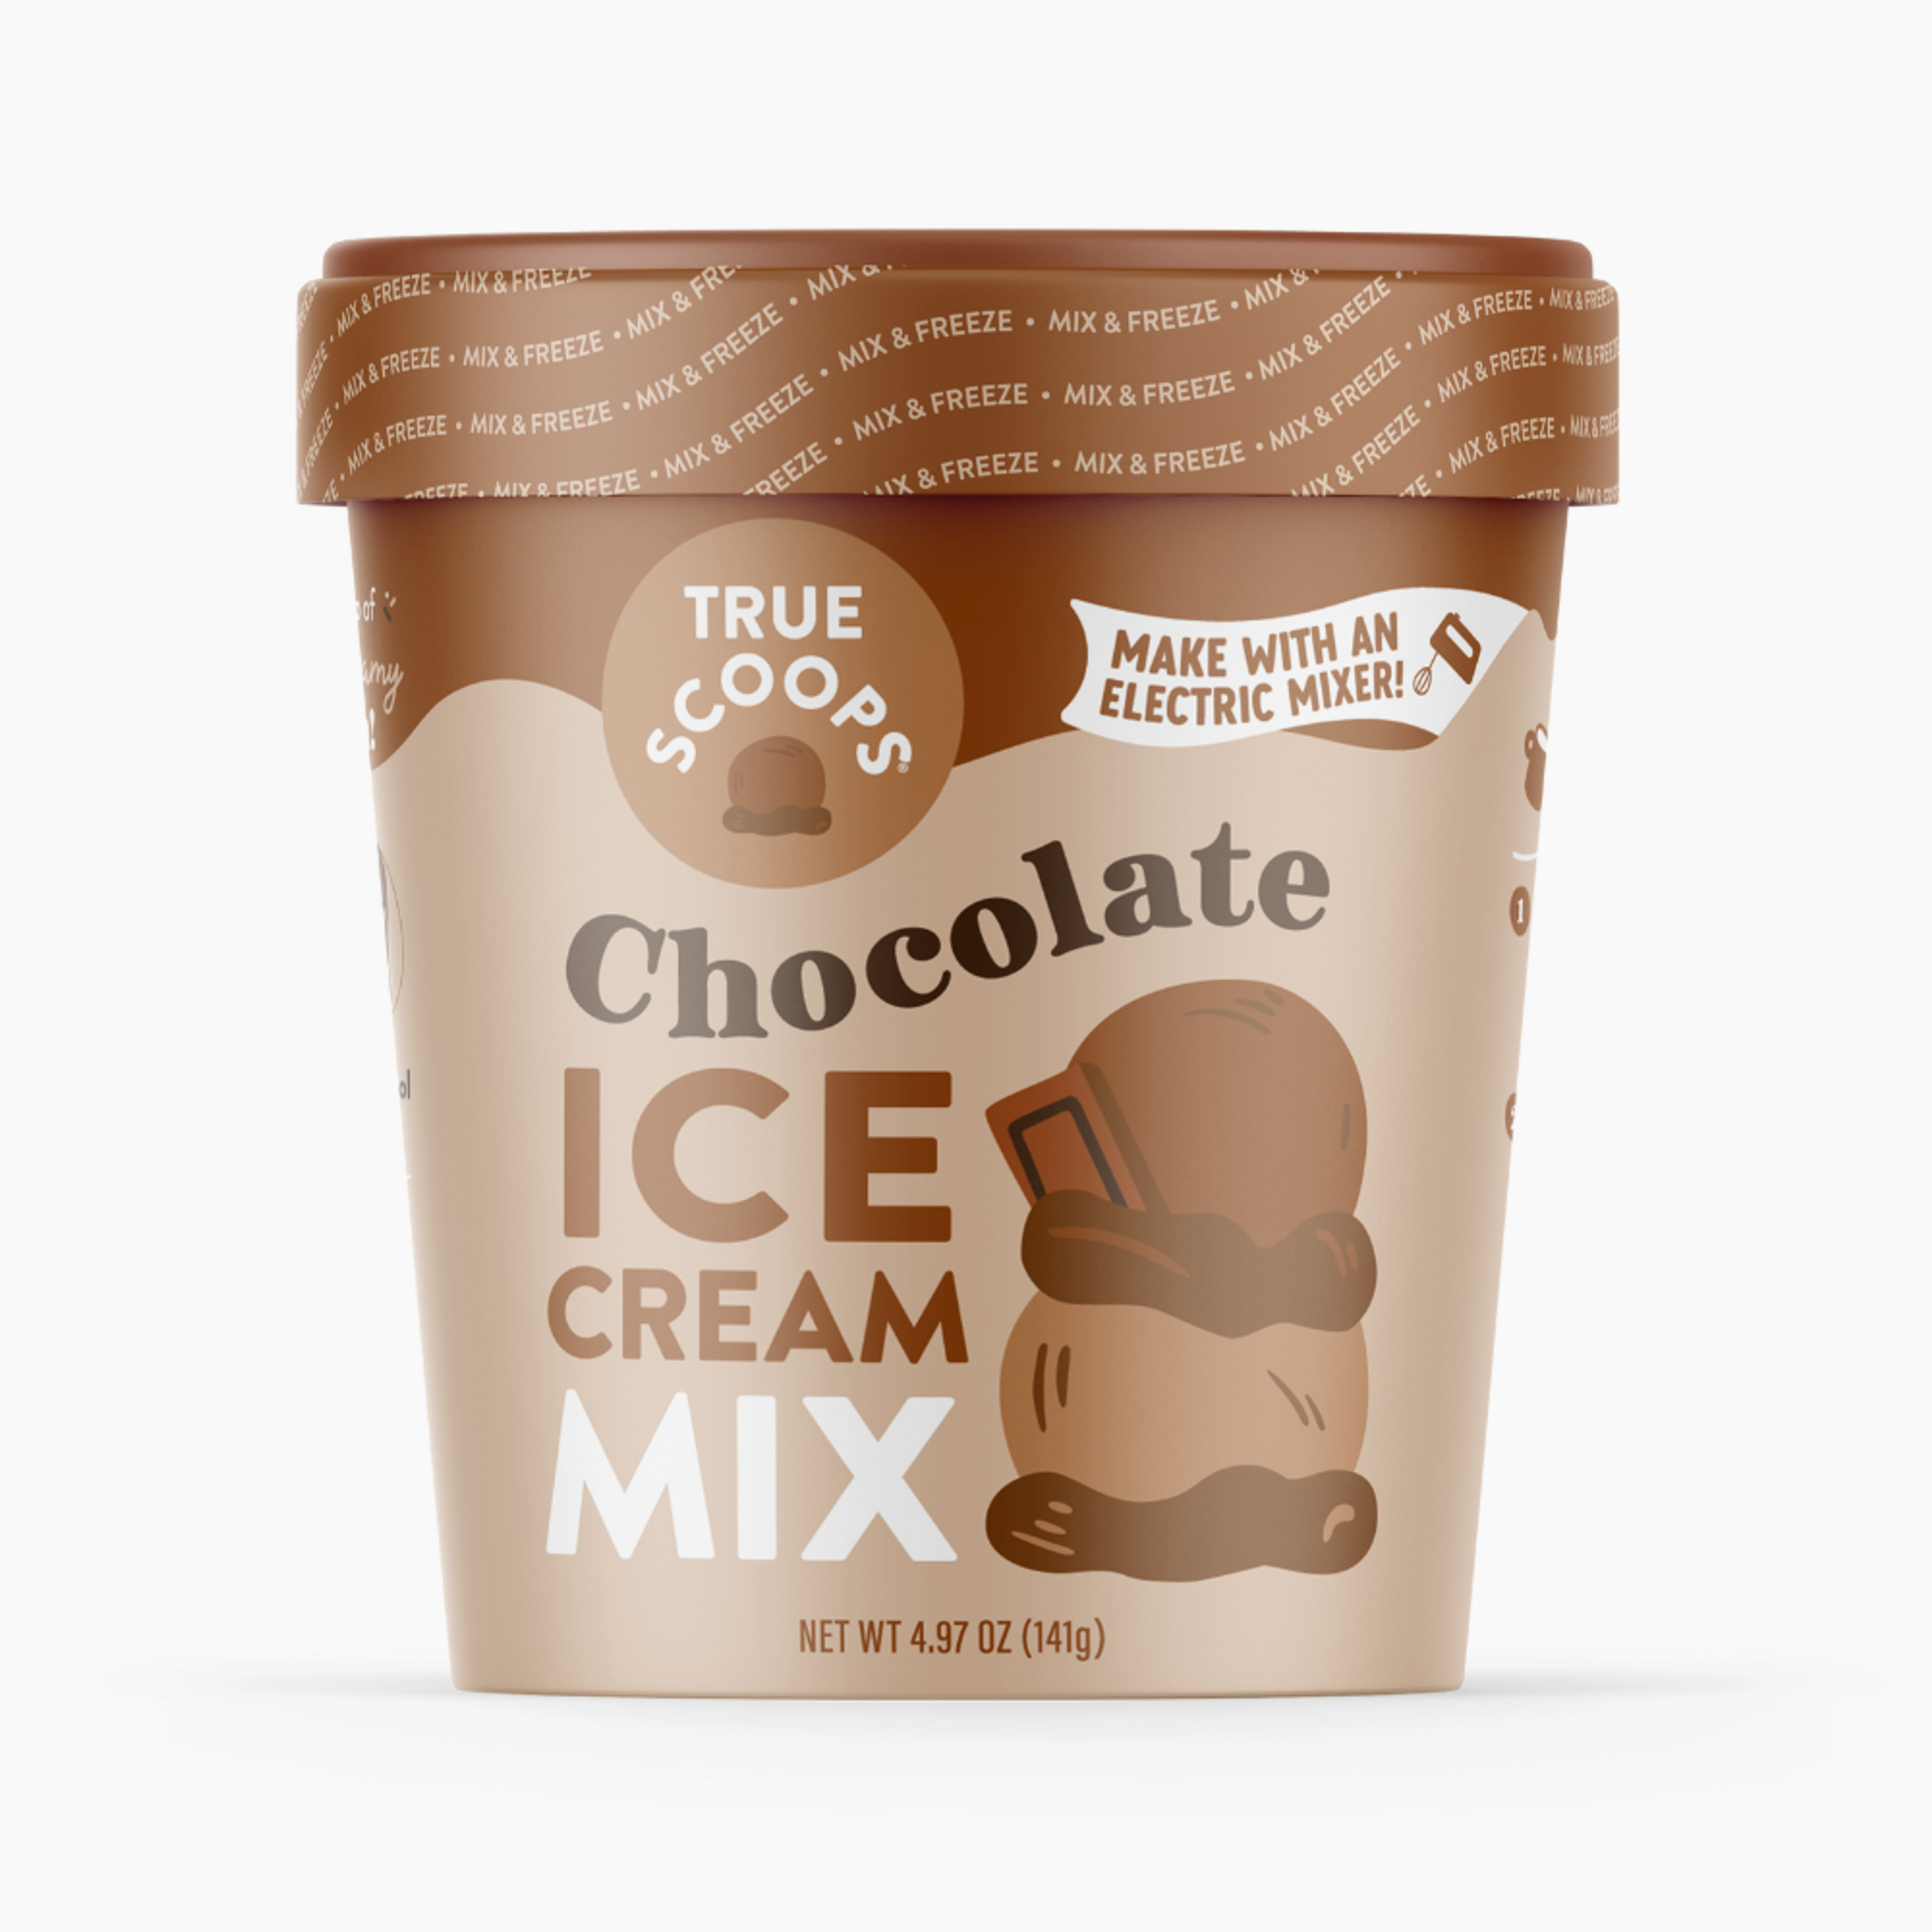 Chocolate Ice Cream Mix 6-Pack